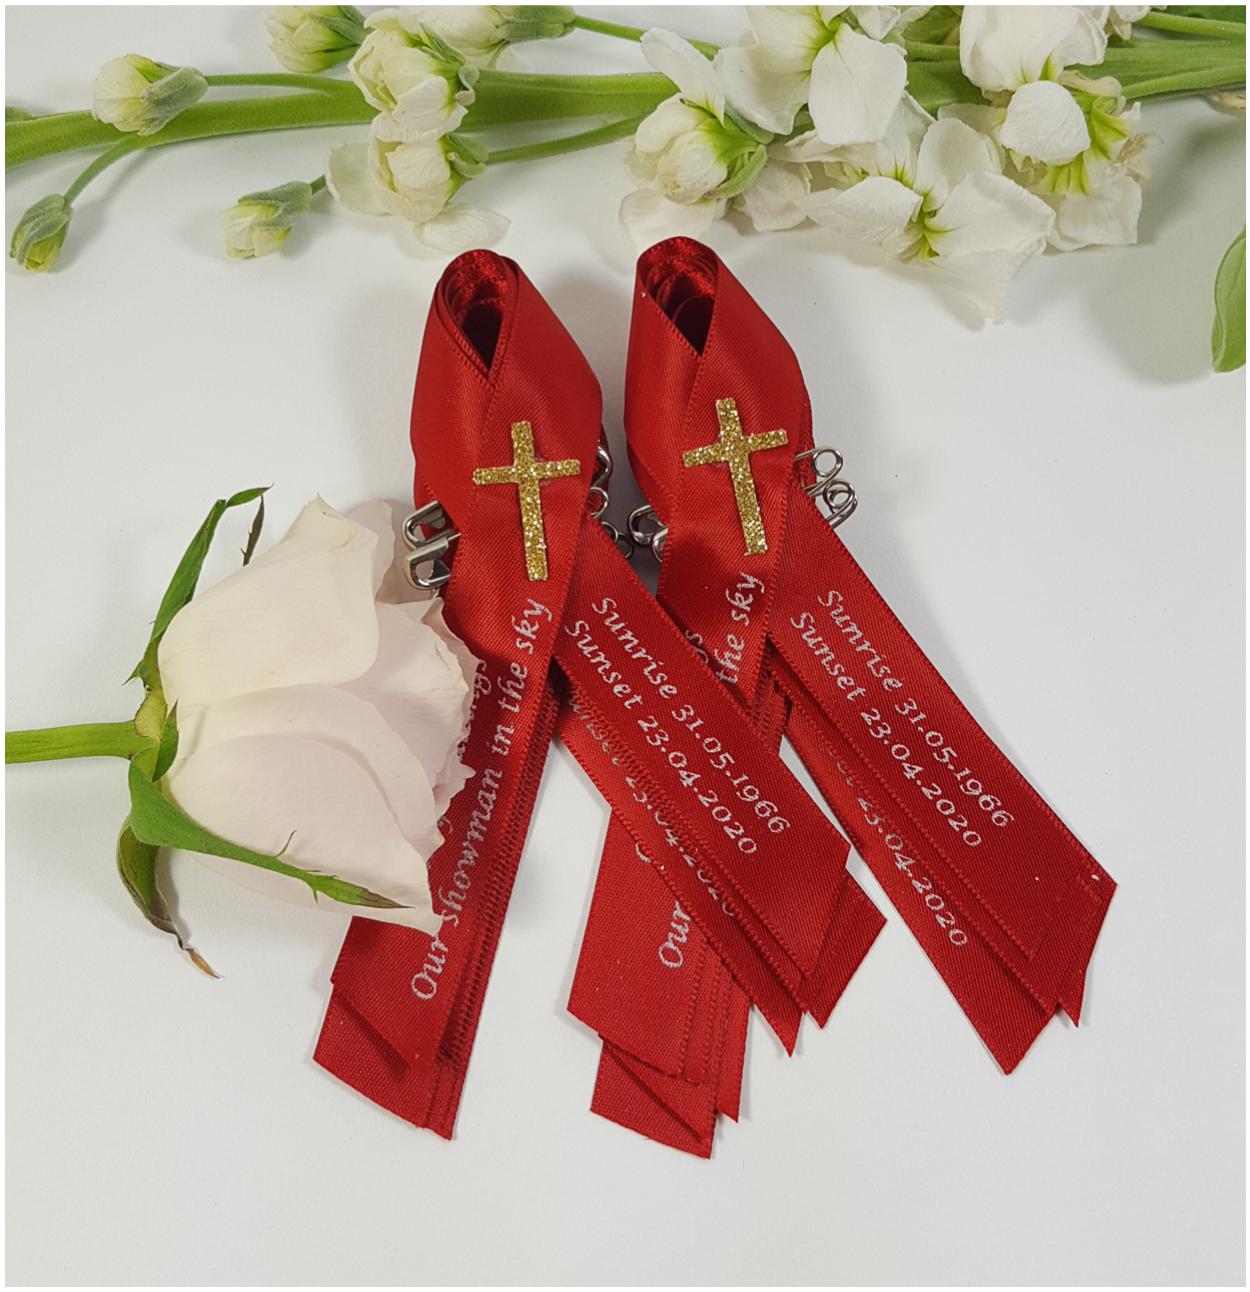 Memorial Ribbon With Cross